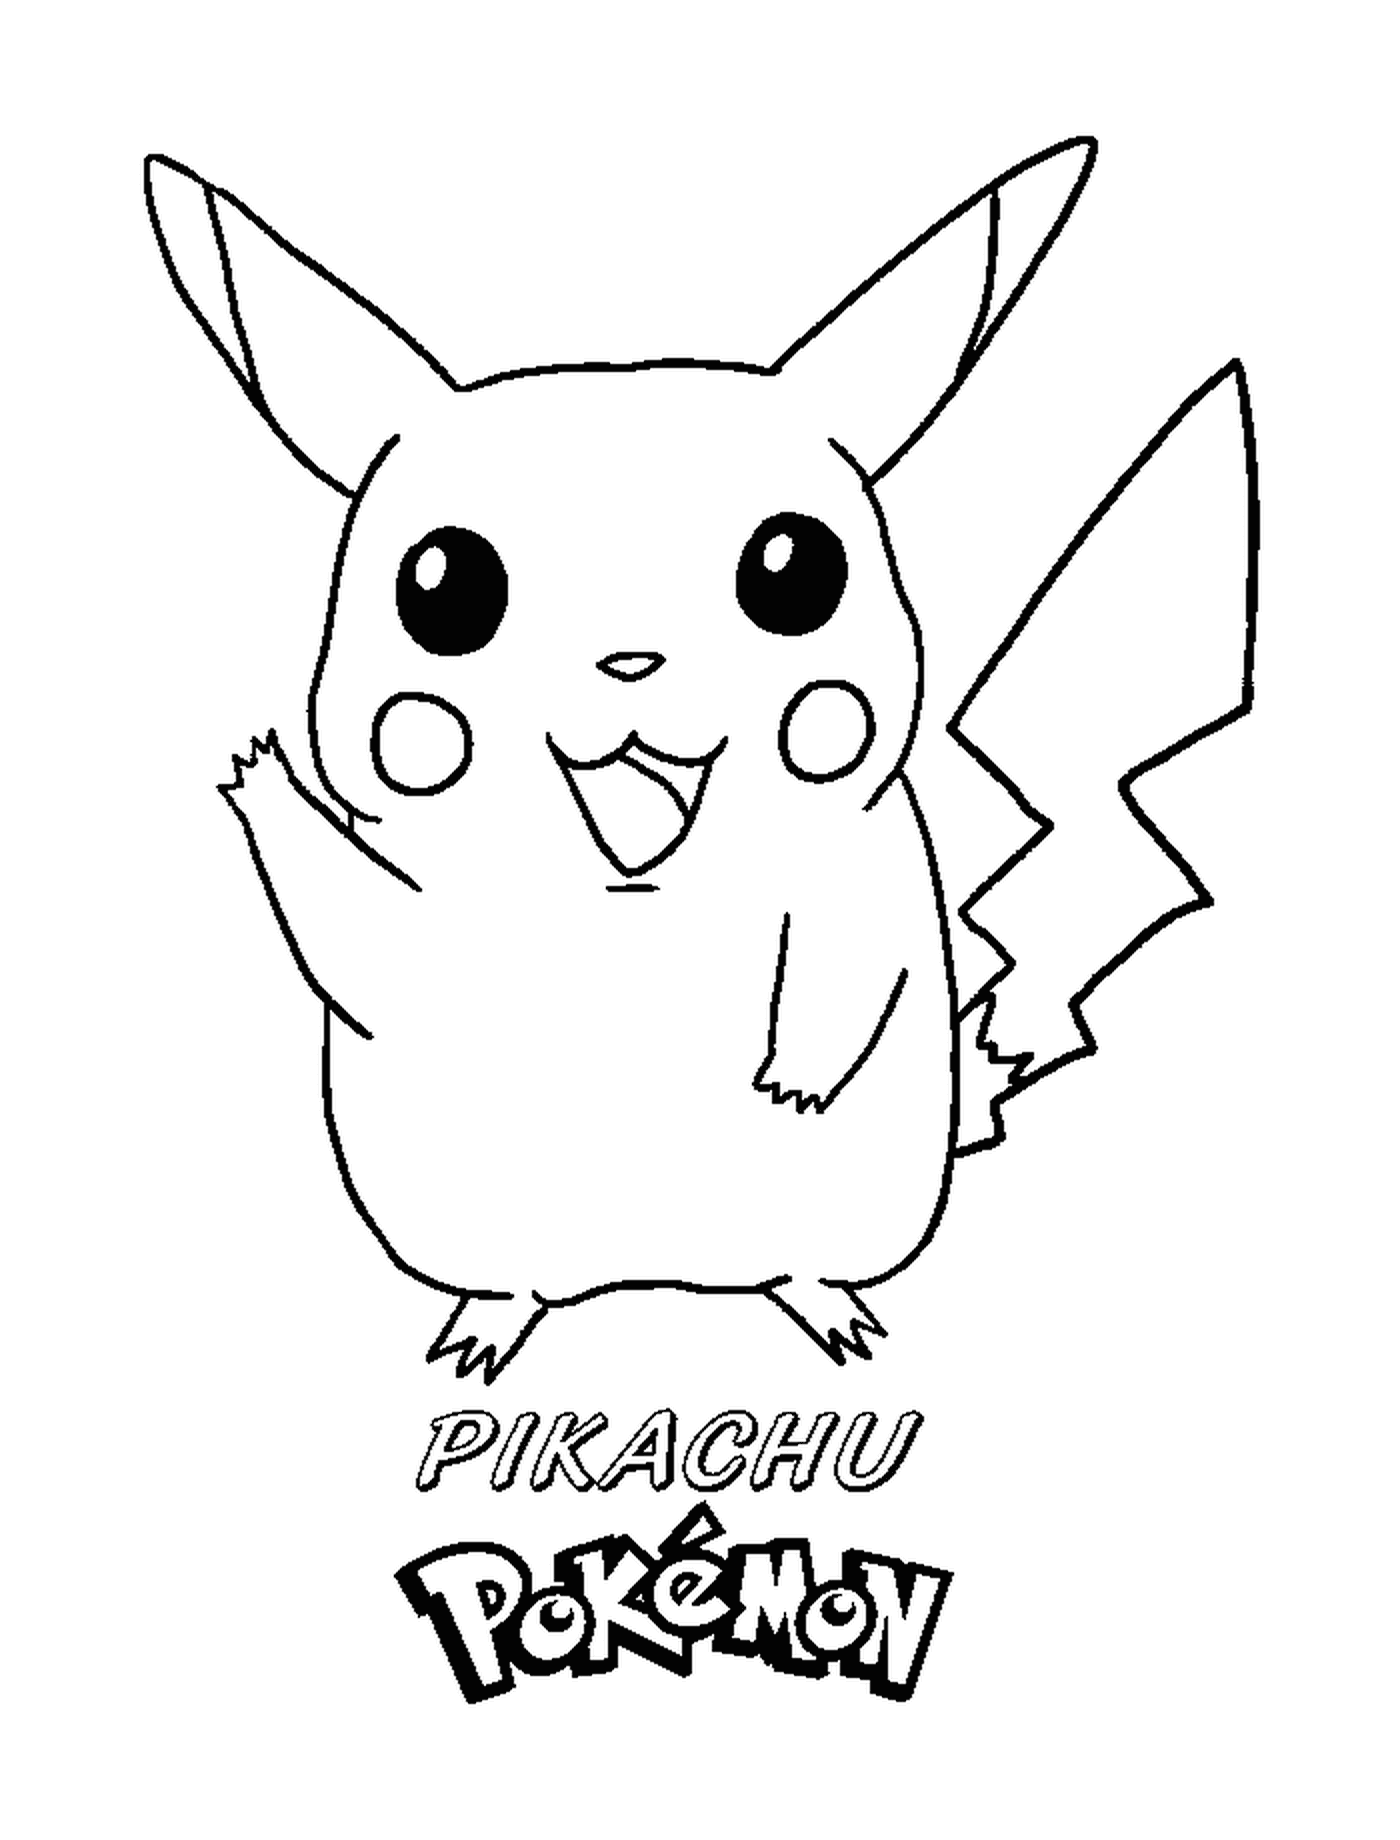   Pikachu avec une expression joyeuse 